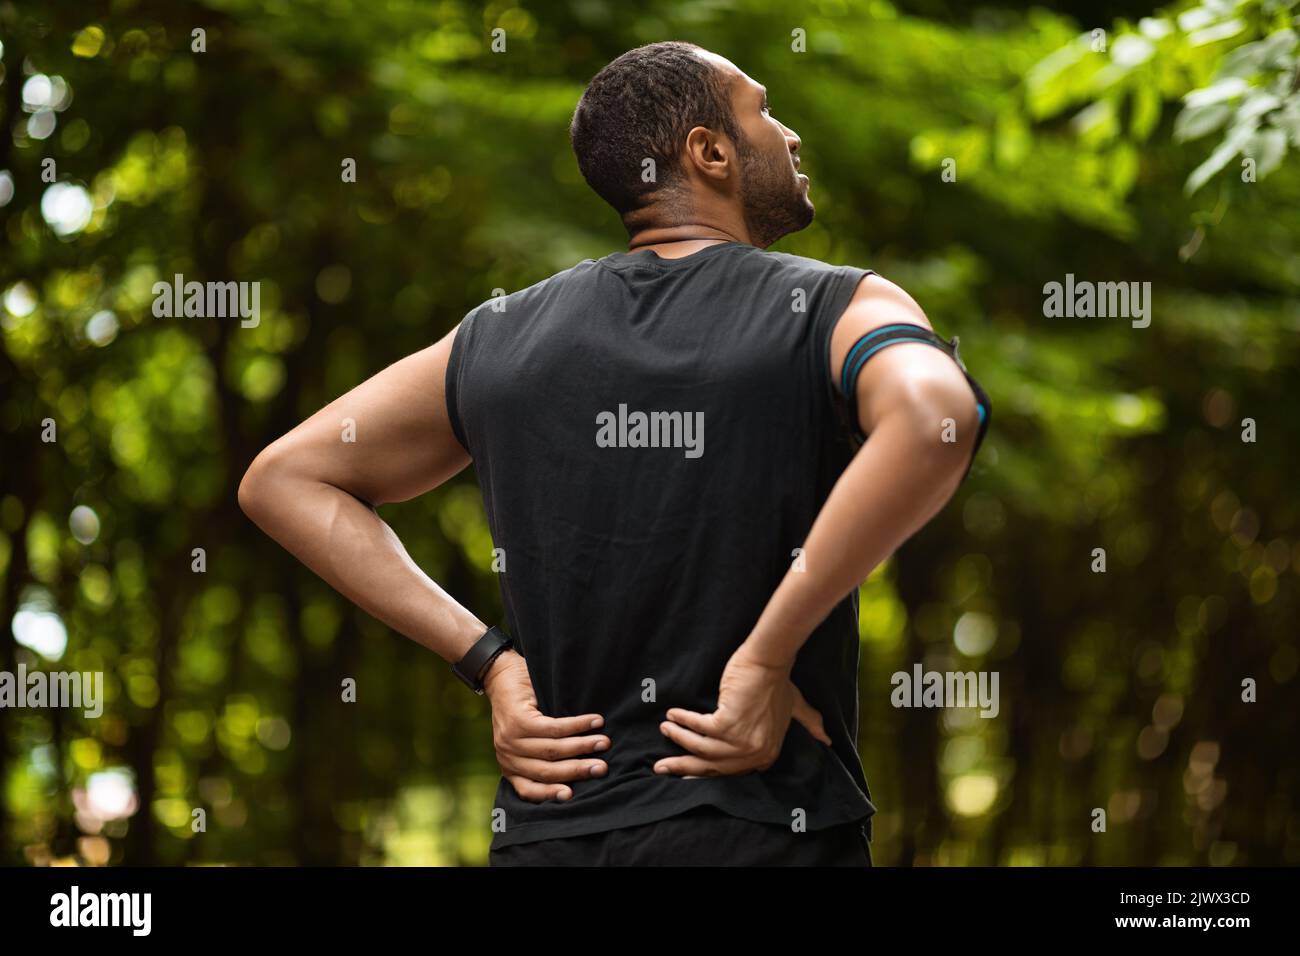 Vue arrière d'un sportif noir touchant la zone douloureuse à l'arrière Banque D'Images